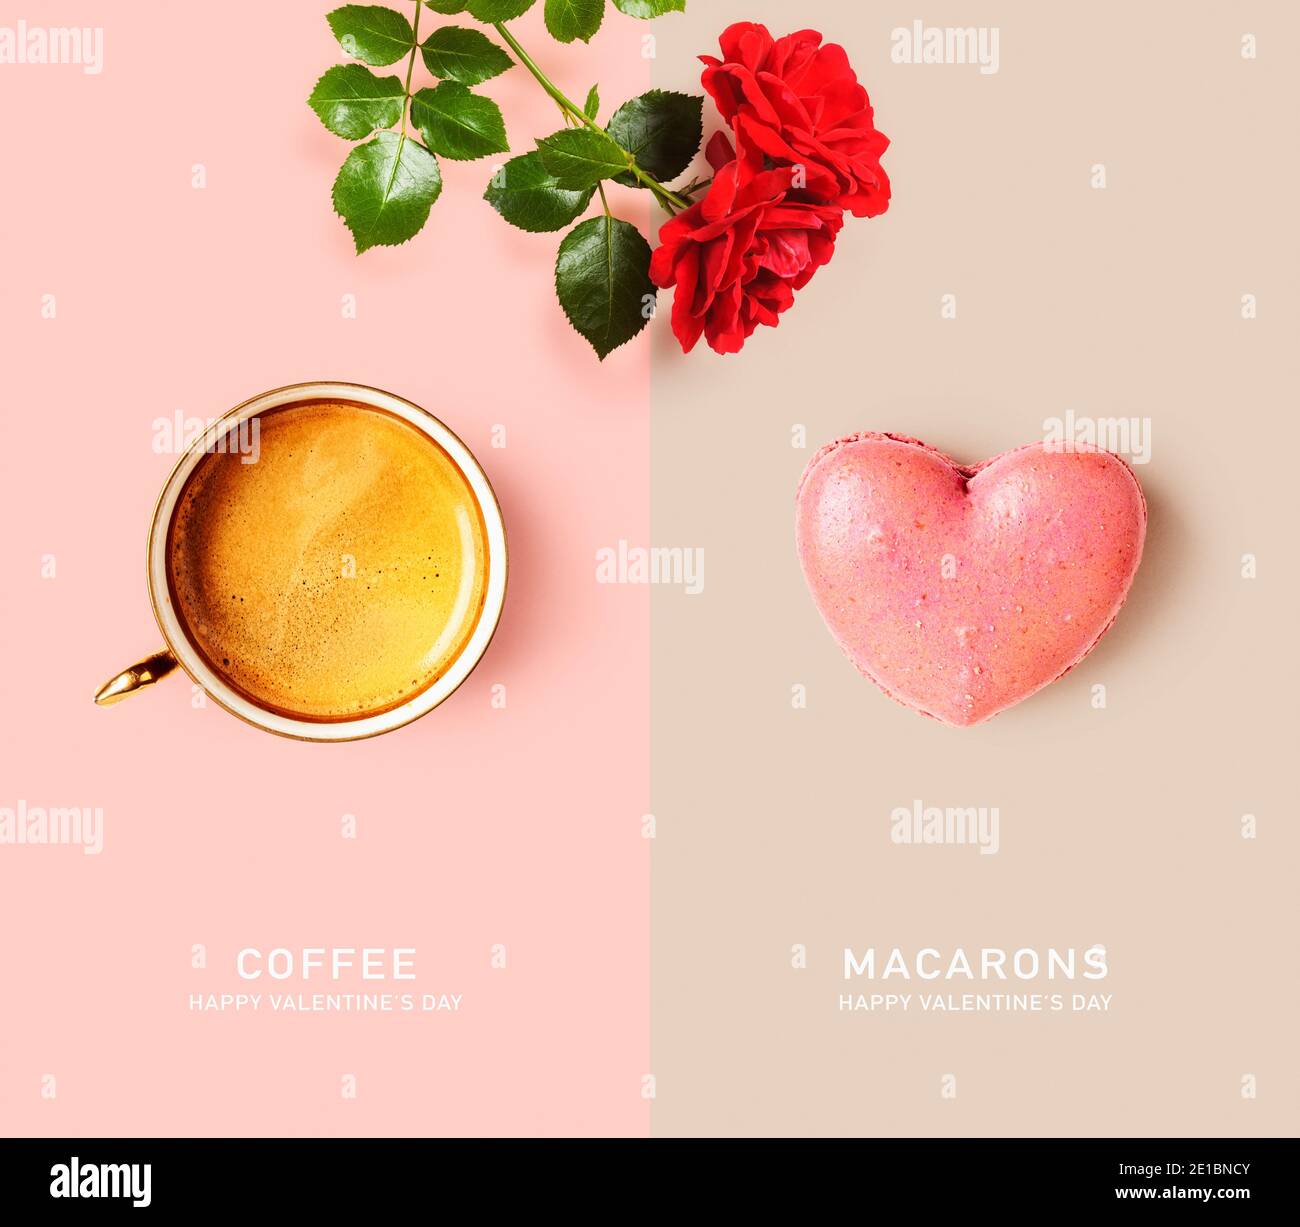 Tazza da caffè, rosa rossa e macaron a forma di cuore layout creativo su sfondo a colori. Concept e biglietto d'auguri per il giorno di San Valentino. Composizione di cibo e fiori Foto Stock